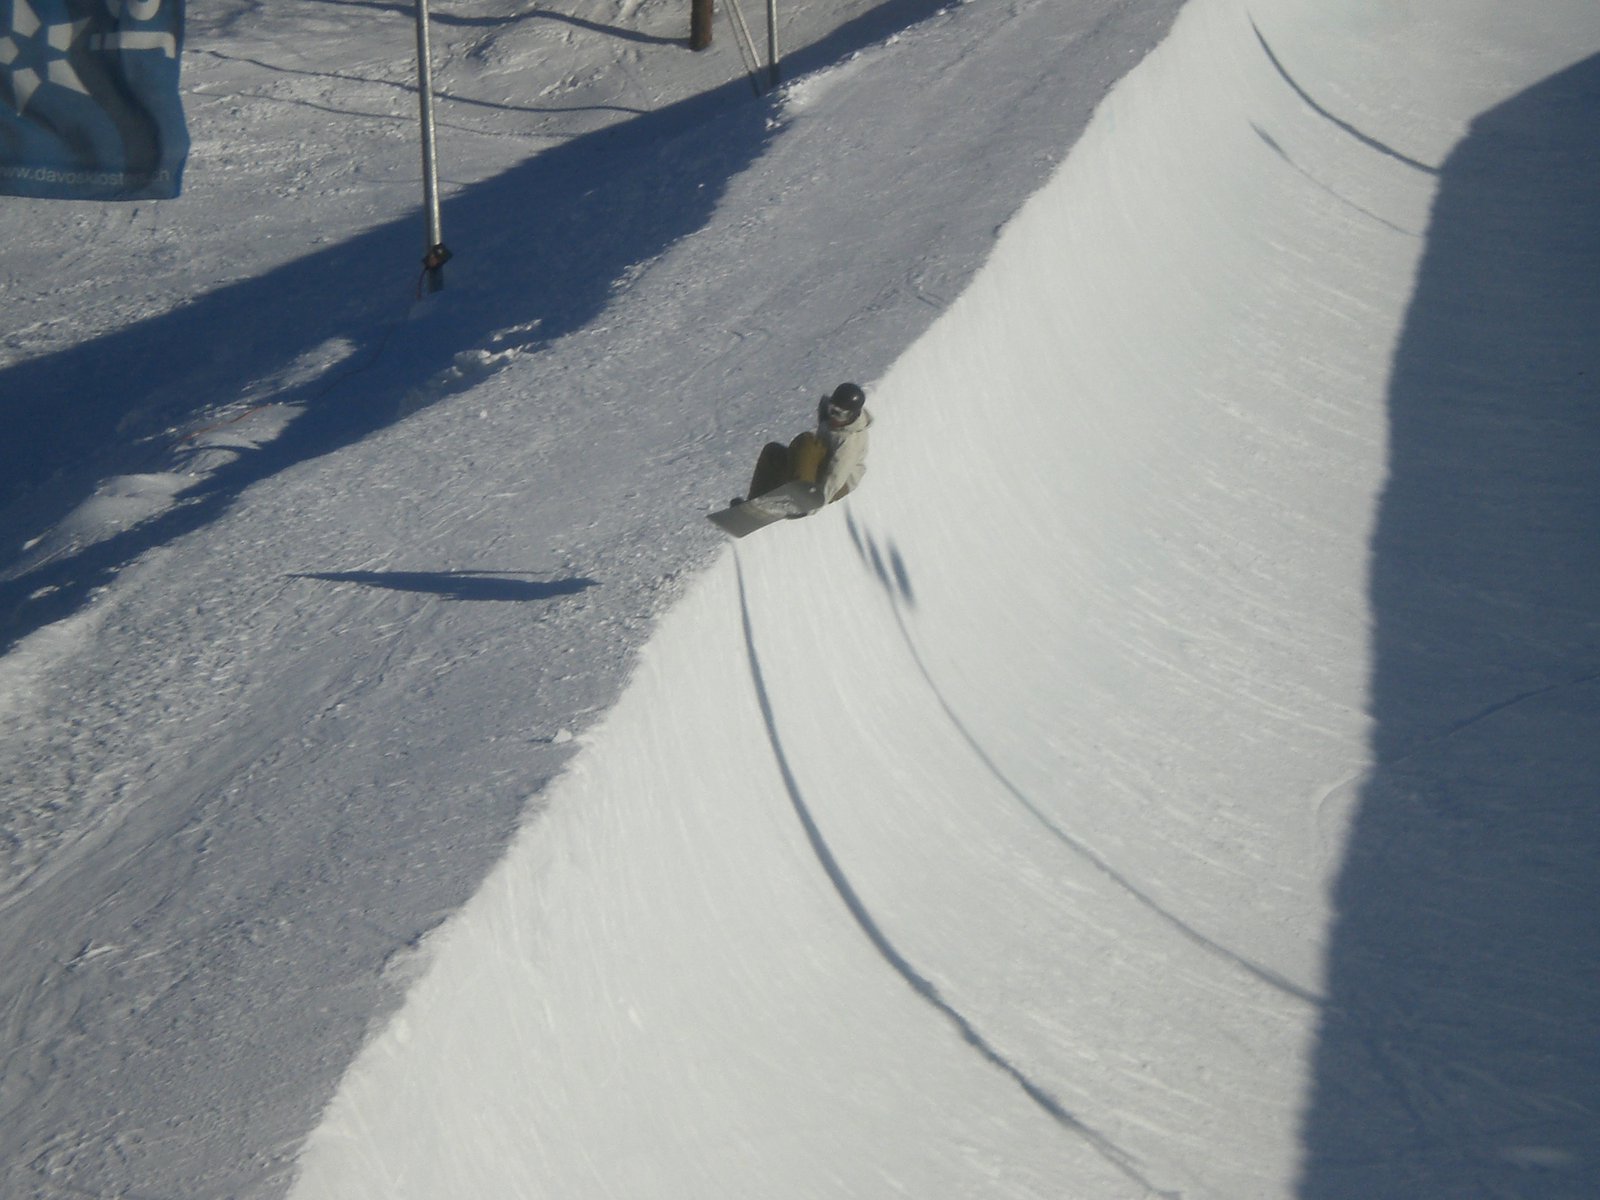 Davos Snowboarder